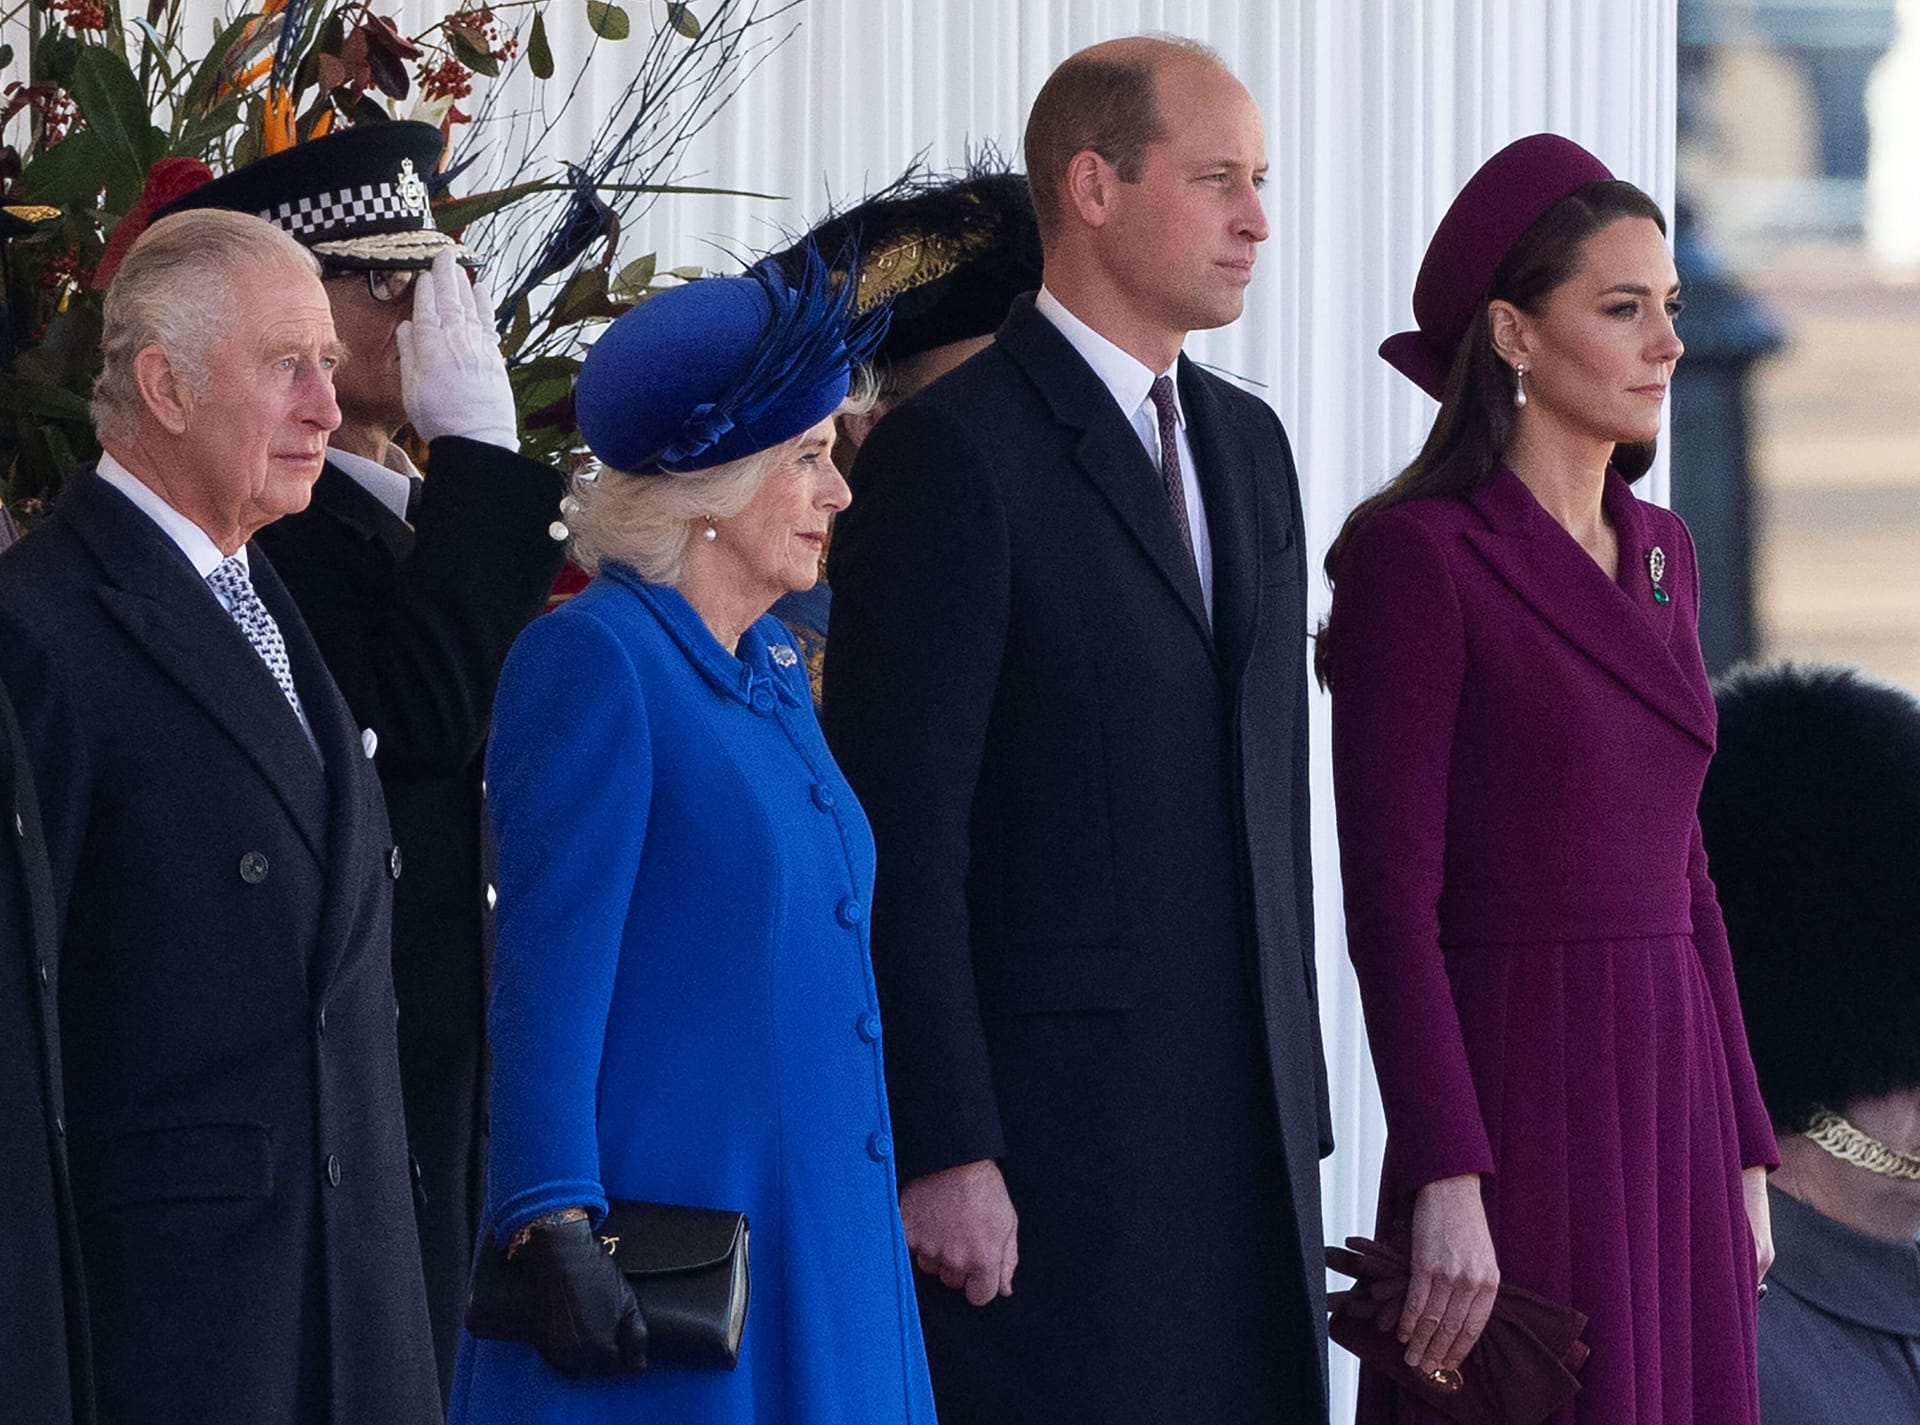 König Charles III., Königsgemahlin Camilla, Prinz William und dessen Ehefrau Kate: Nicht alle Royals werden sich in diesem Jahr beim Ostergottesdienst zeigen.